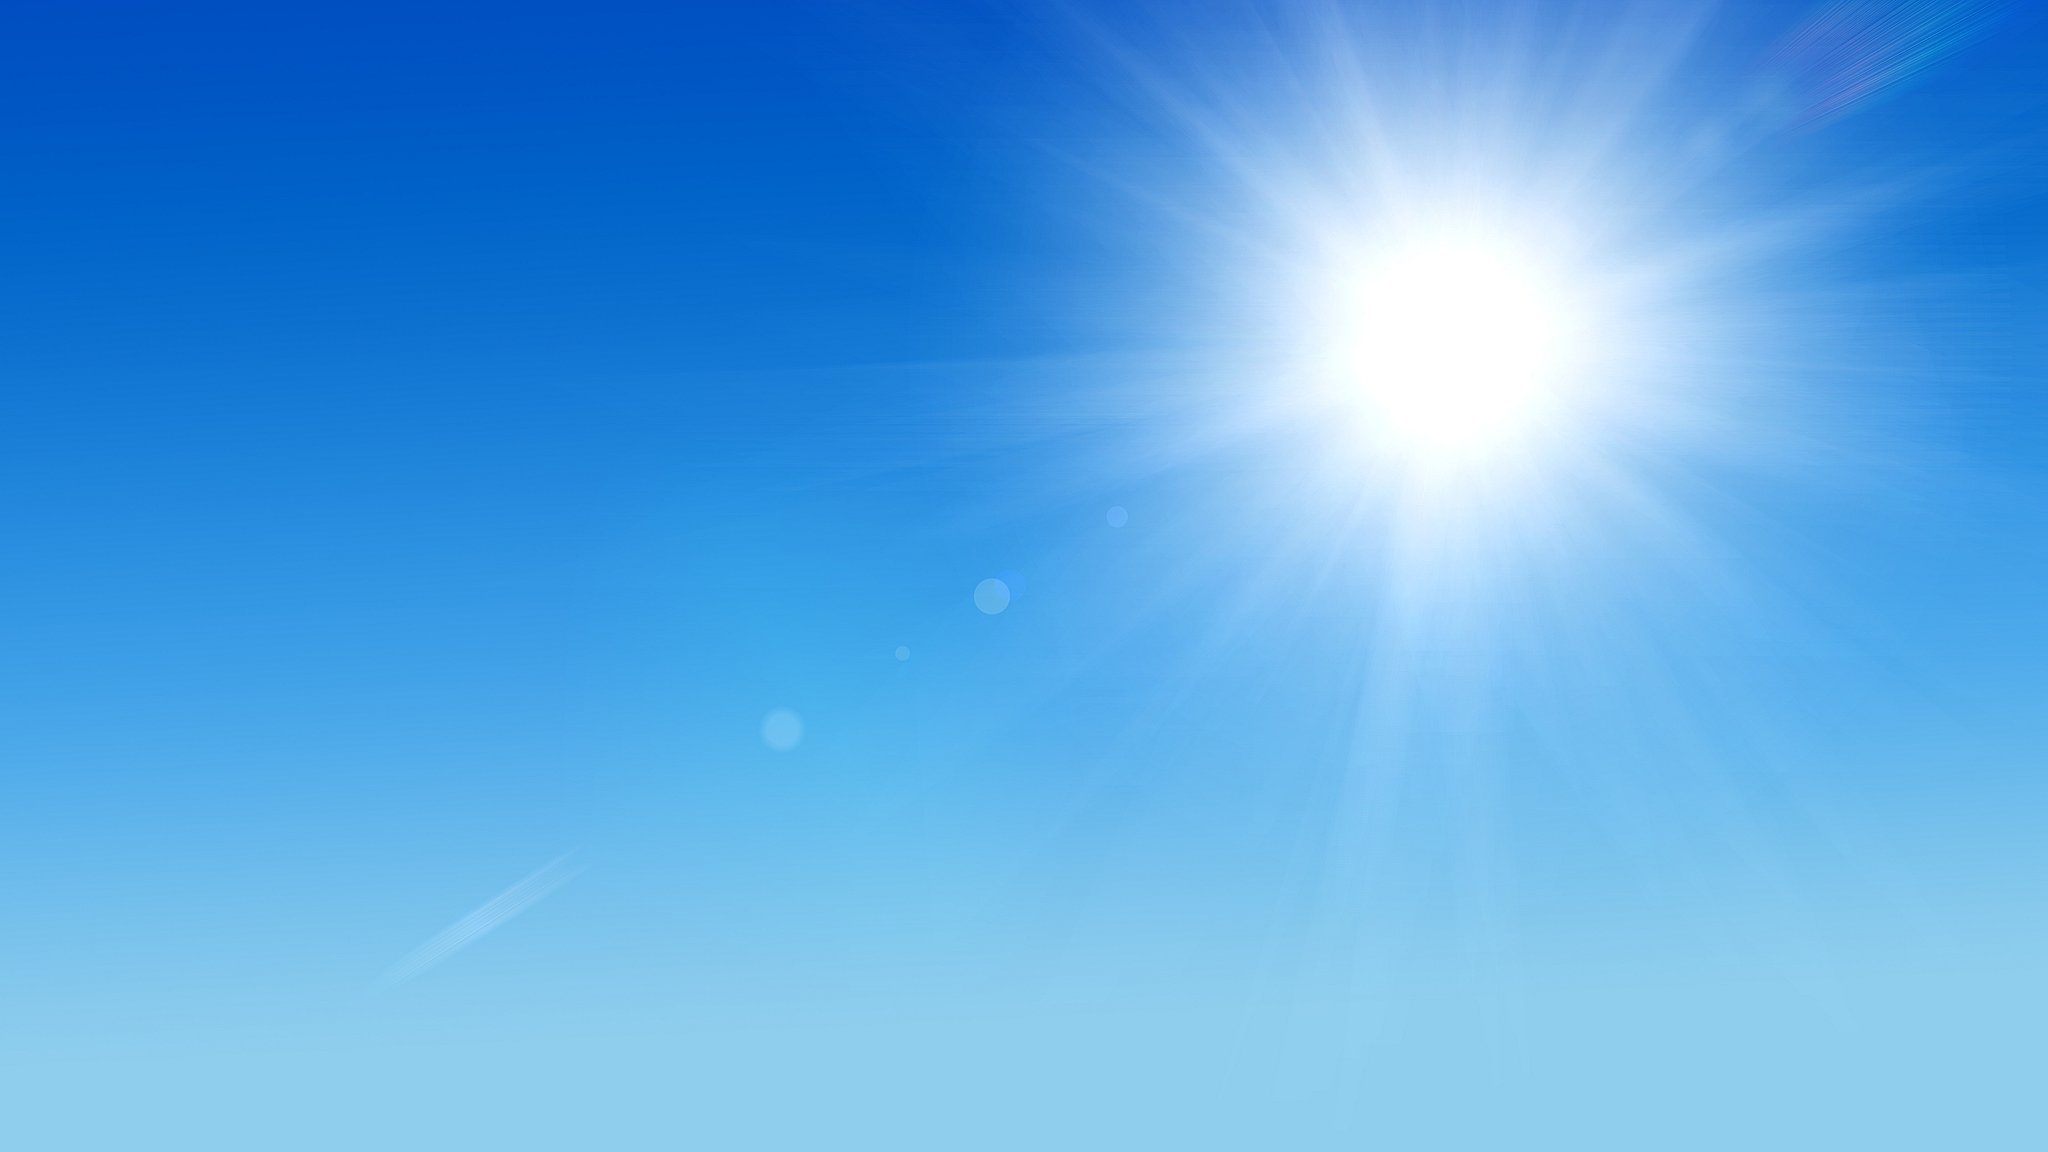 Meteo Scicli: oggi lunedì 28 Agosto sereno, previsto caldo intenso.